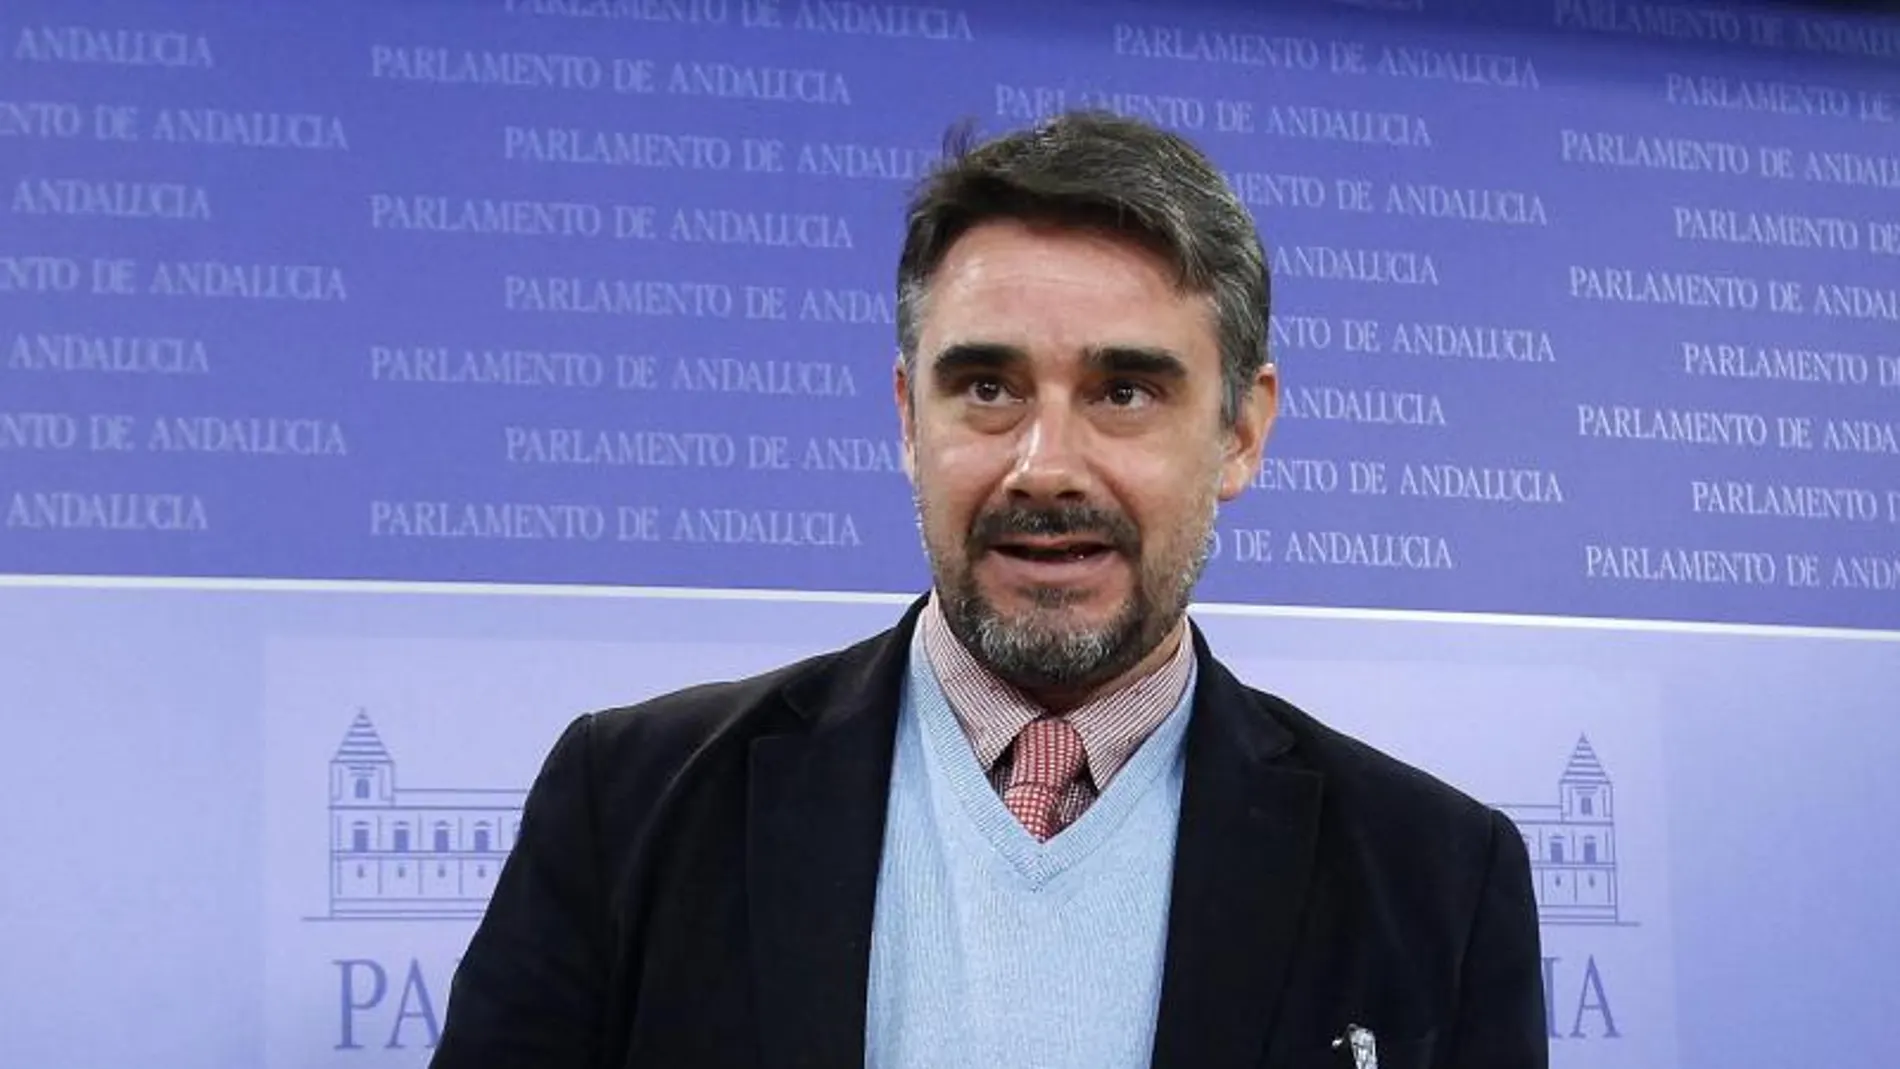 El parlamentario andaluz de Podemos, Juan Ignacio Moreno Yagüe